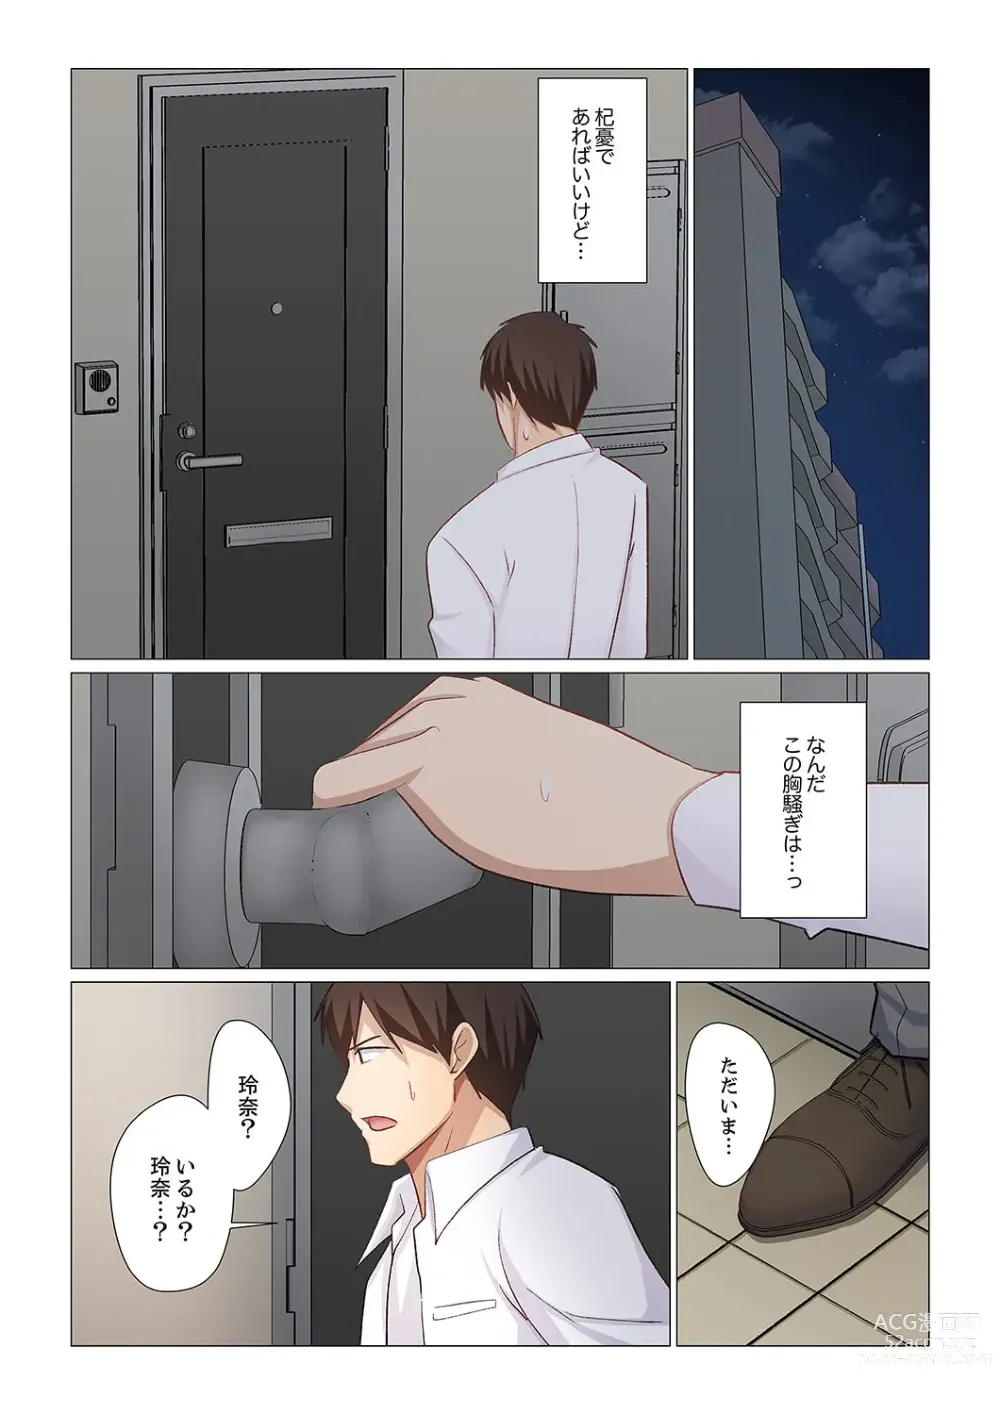 Page 10 of manga 16 Sai ni Natta Tsuma 21